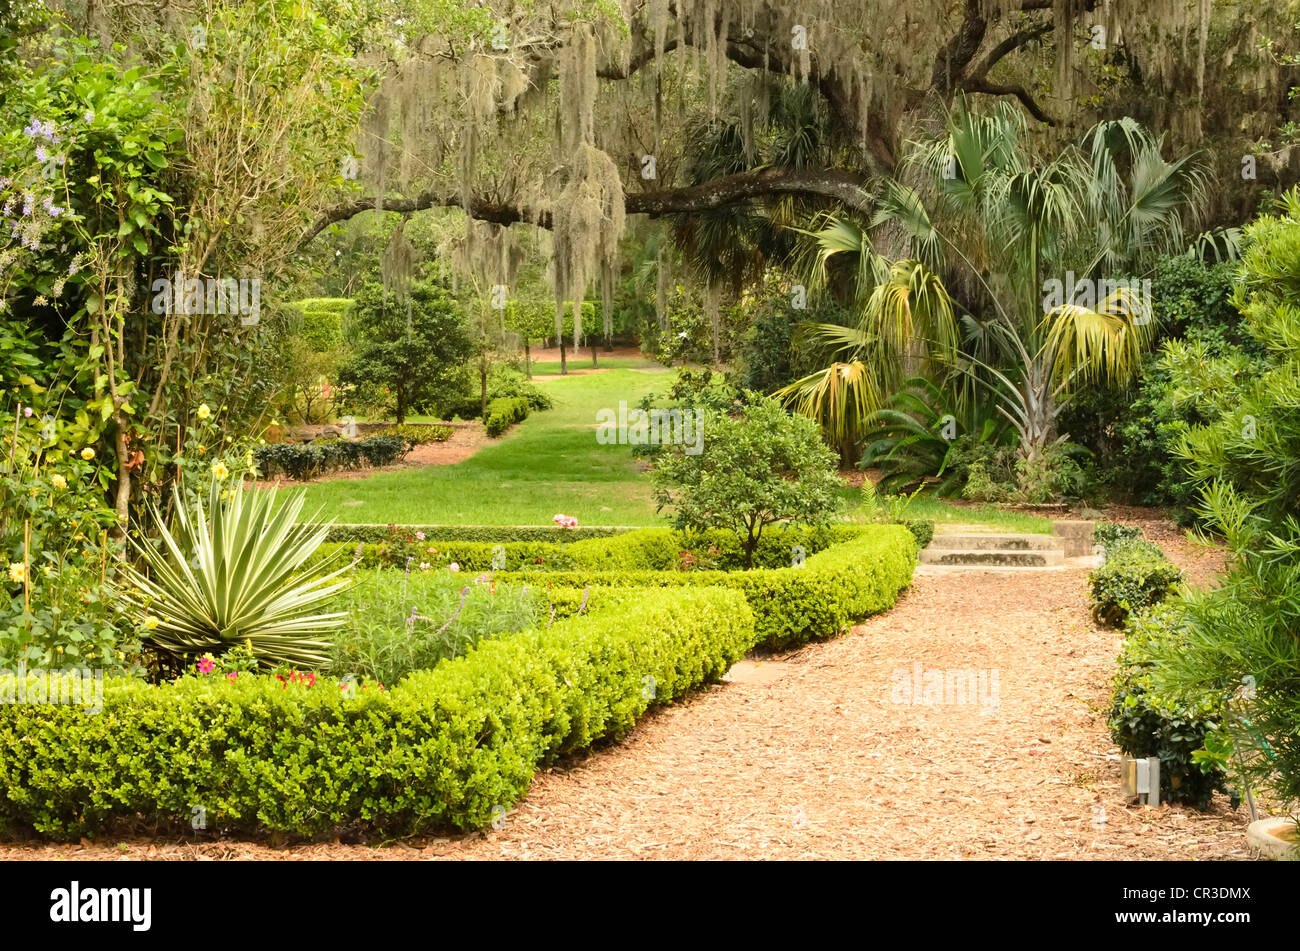 Formal garden in central Florida Stock Photo